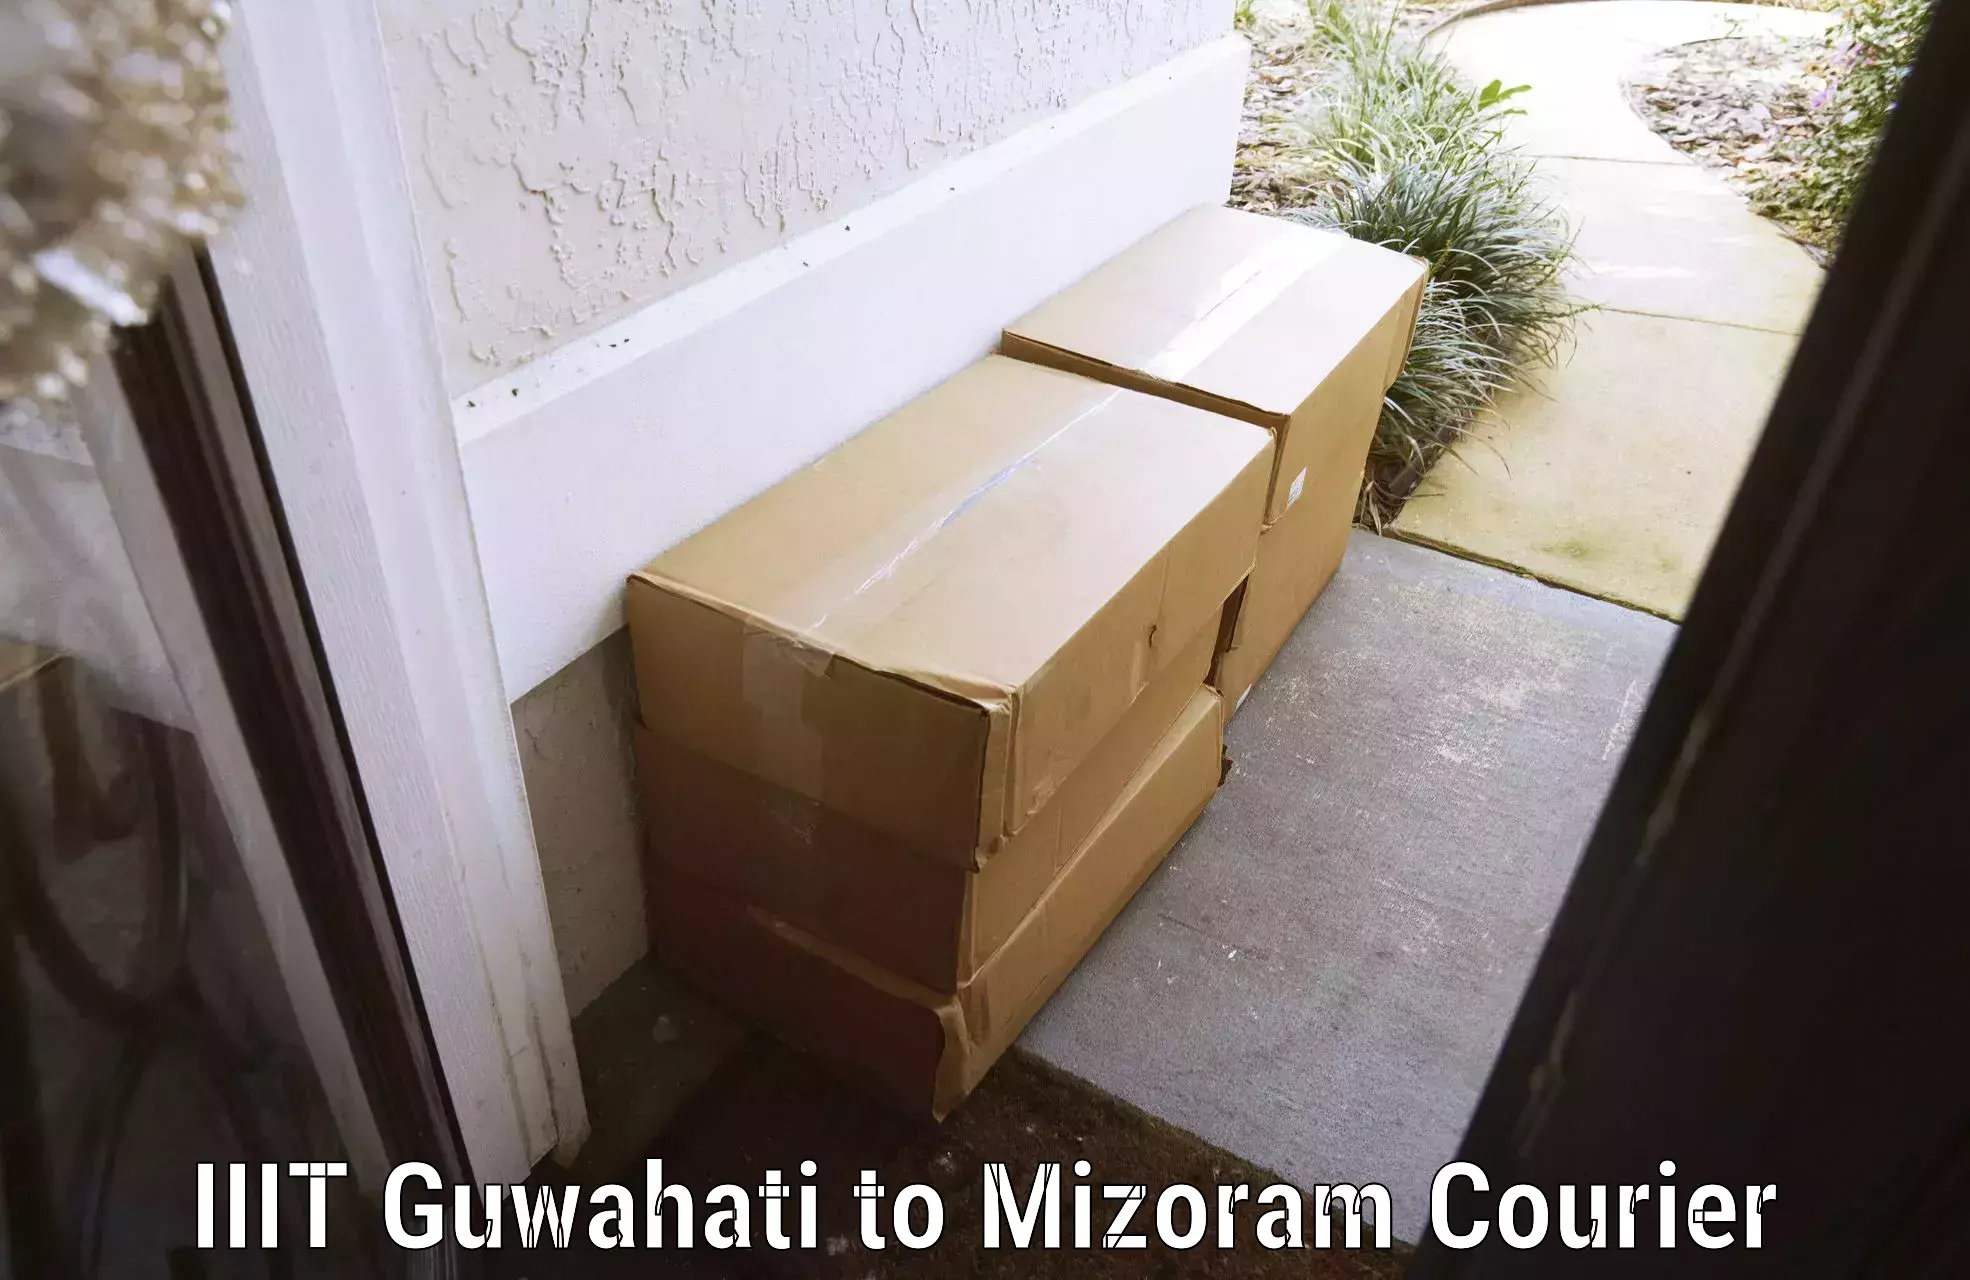 Baggage delivery estimate IIIT Guwahati to Mizoram